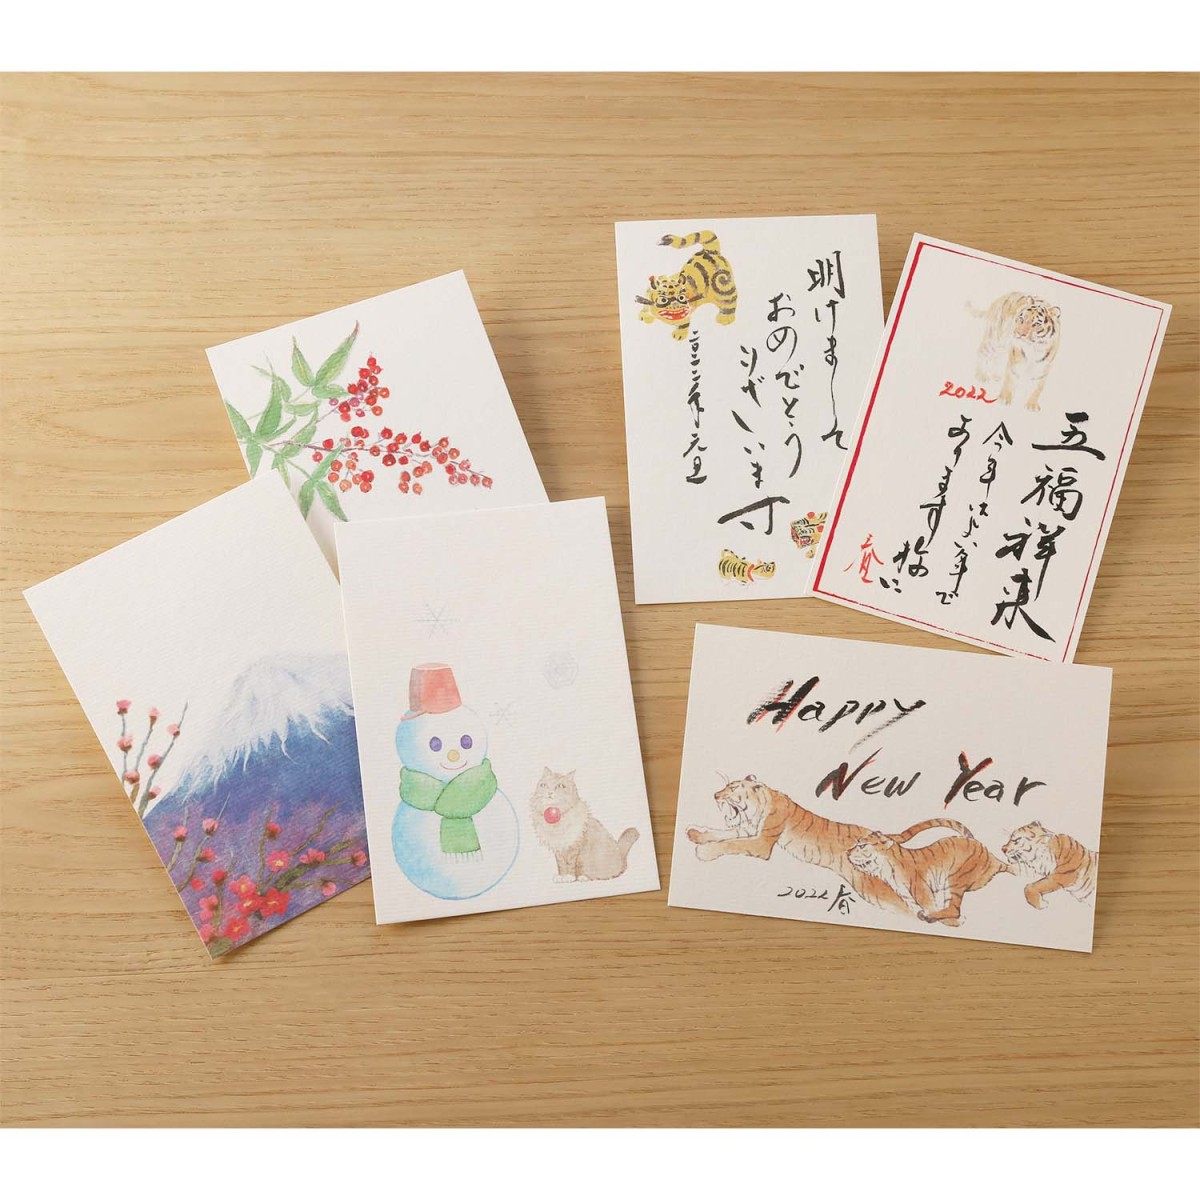  новогодняя открытка новый год модный японская бумага открытка с видом . главный новогоднее поздравление открытка sho ..2 листов входит / Kuroneko .. пачка соответствует 